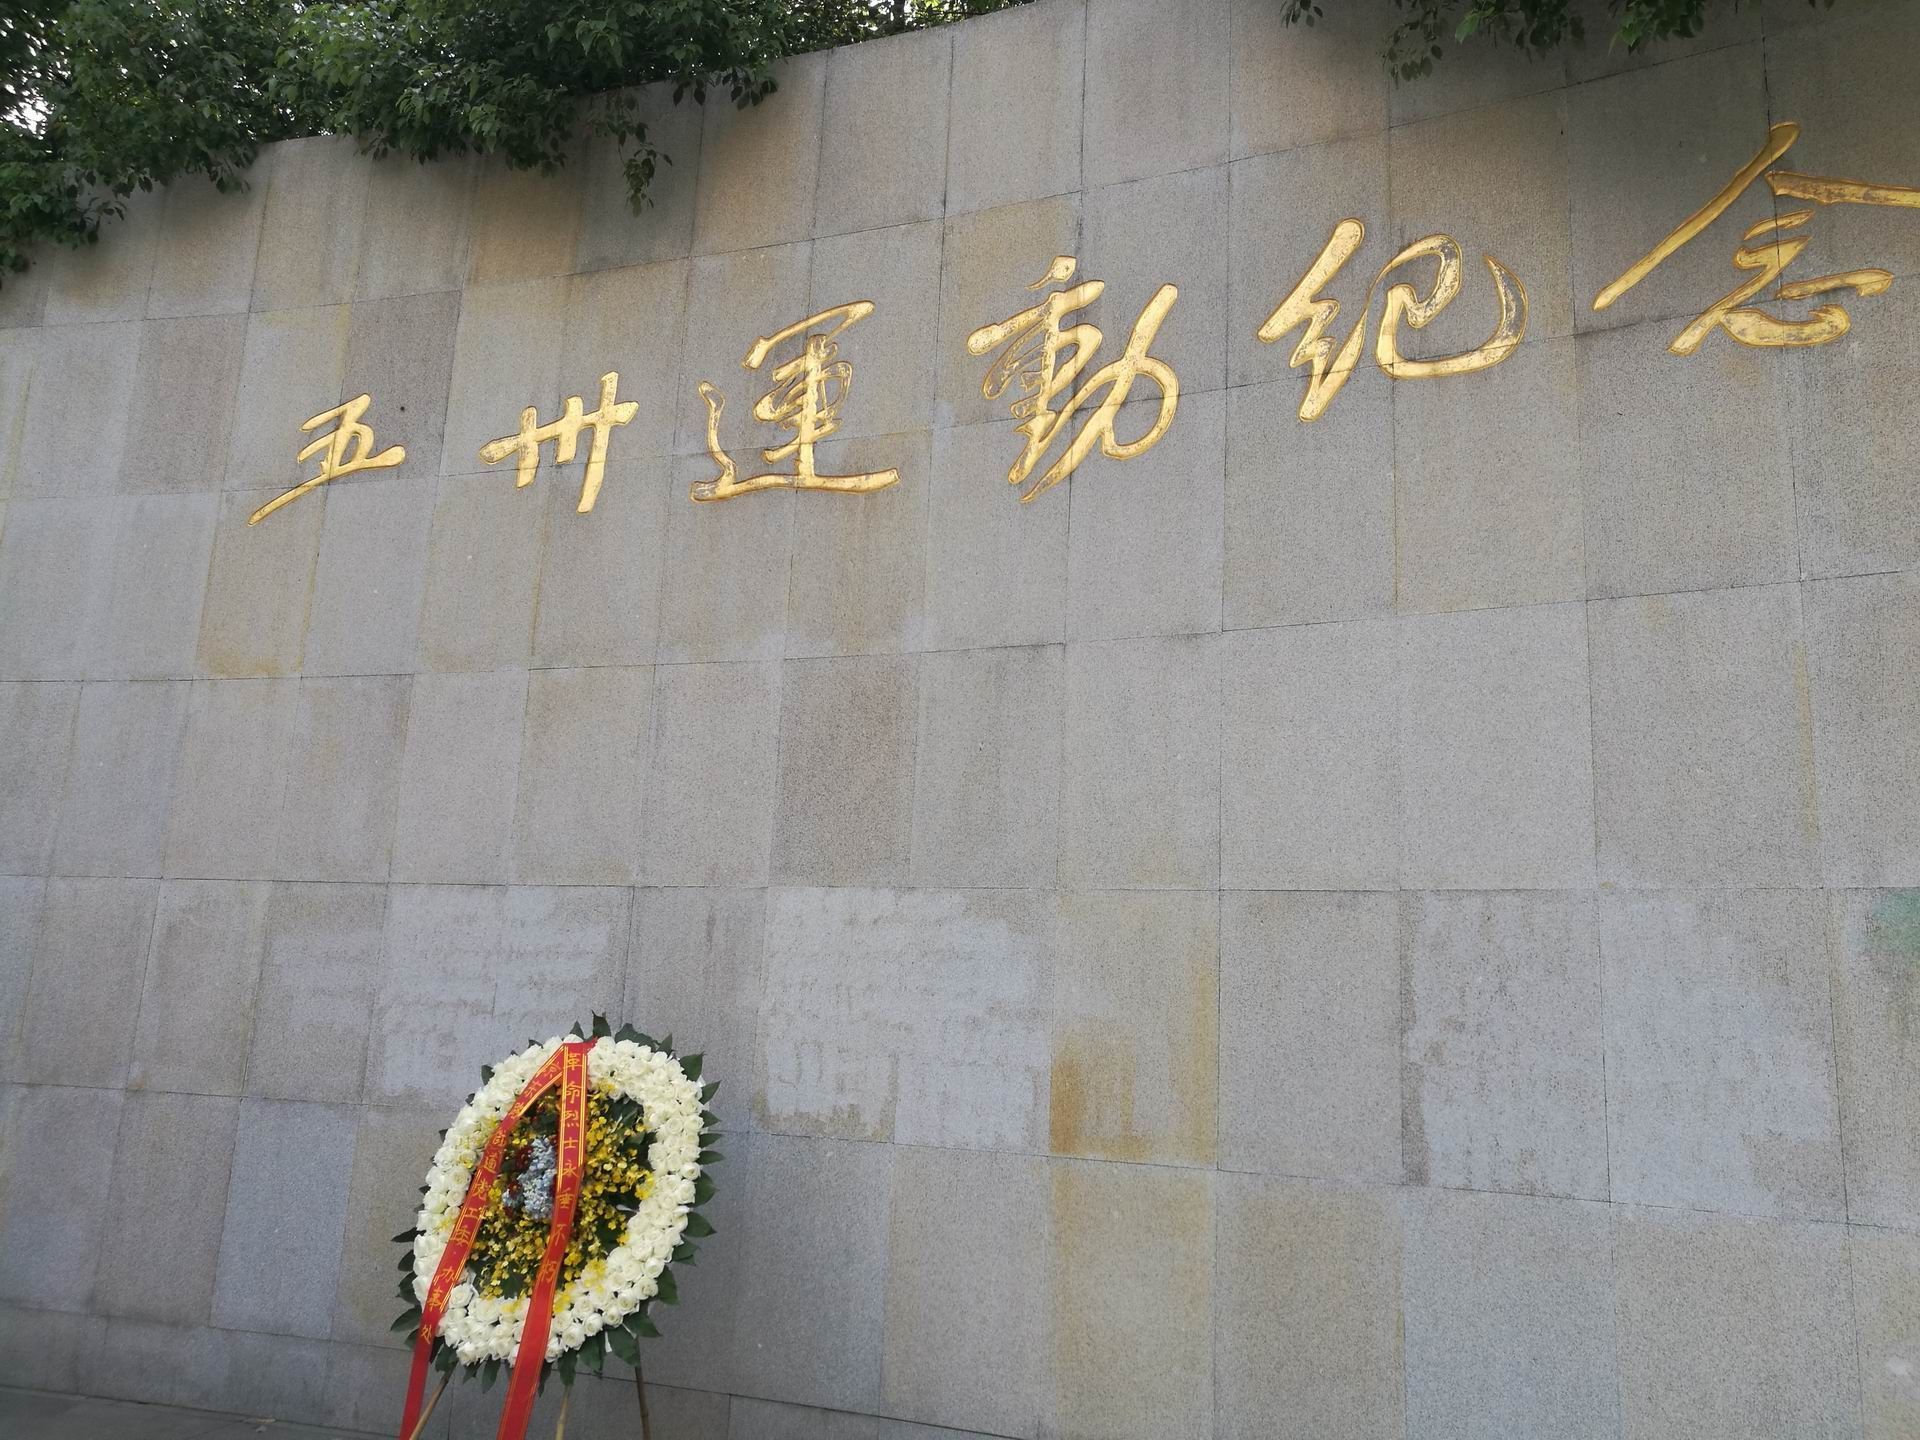 五卅广场西侧的圆弧形花岗岩纪念墙上镌刻着五卅运动纪念碑七个金光